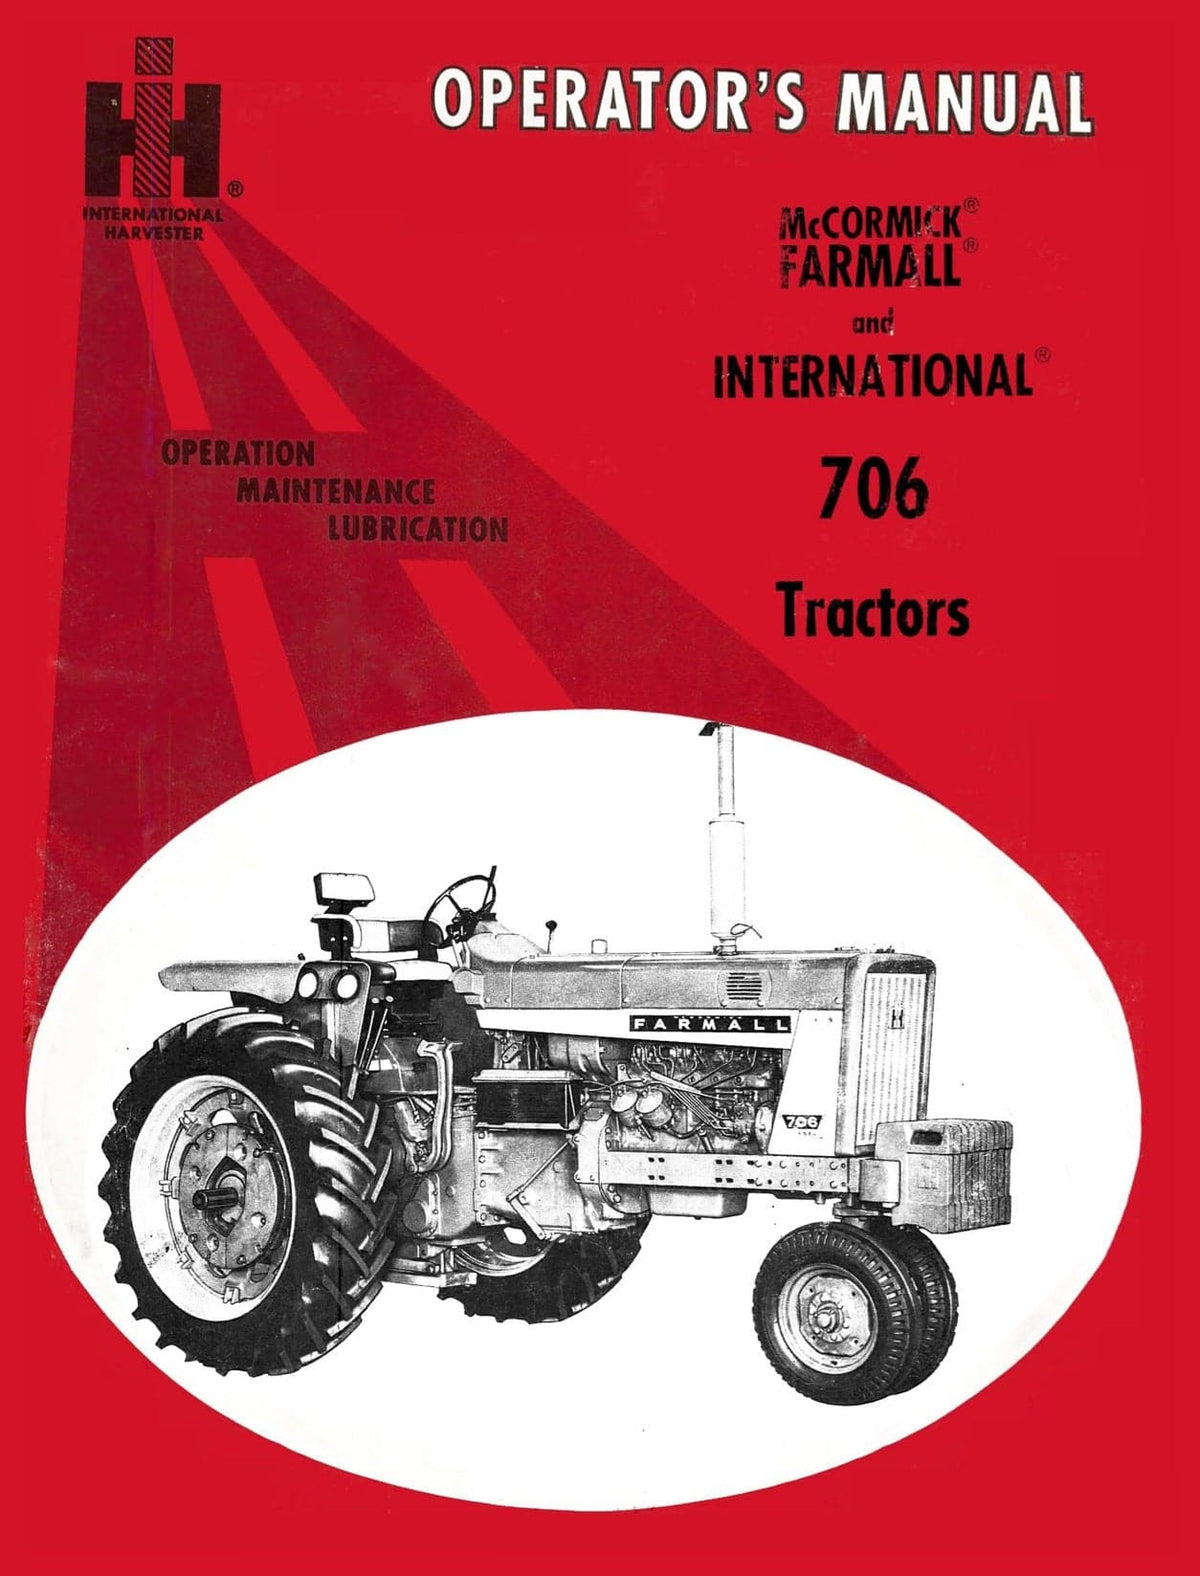 International 706 Tractors - Operator's Manual - Ag Manuals - A Provider of Digital Farm Manuals - 1